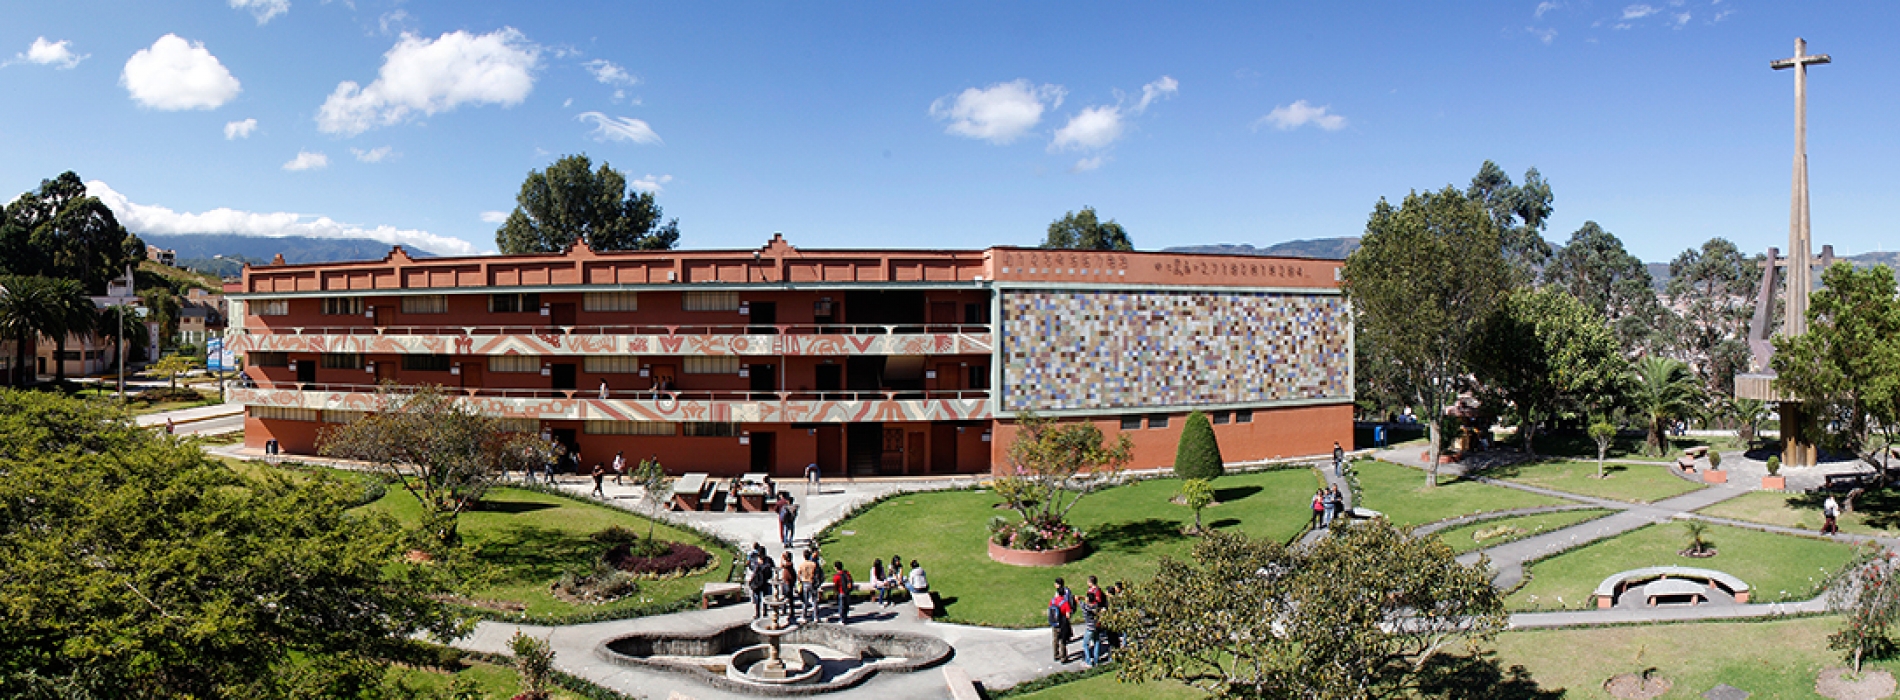 46º aniversario de fundación de la Universidad Técnica Particular de Loja